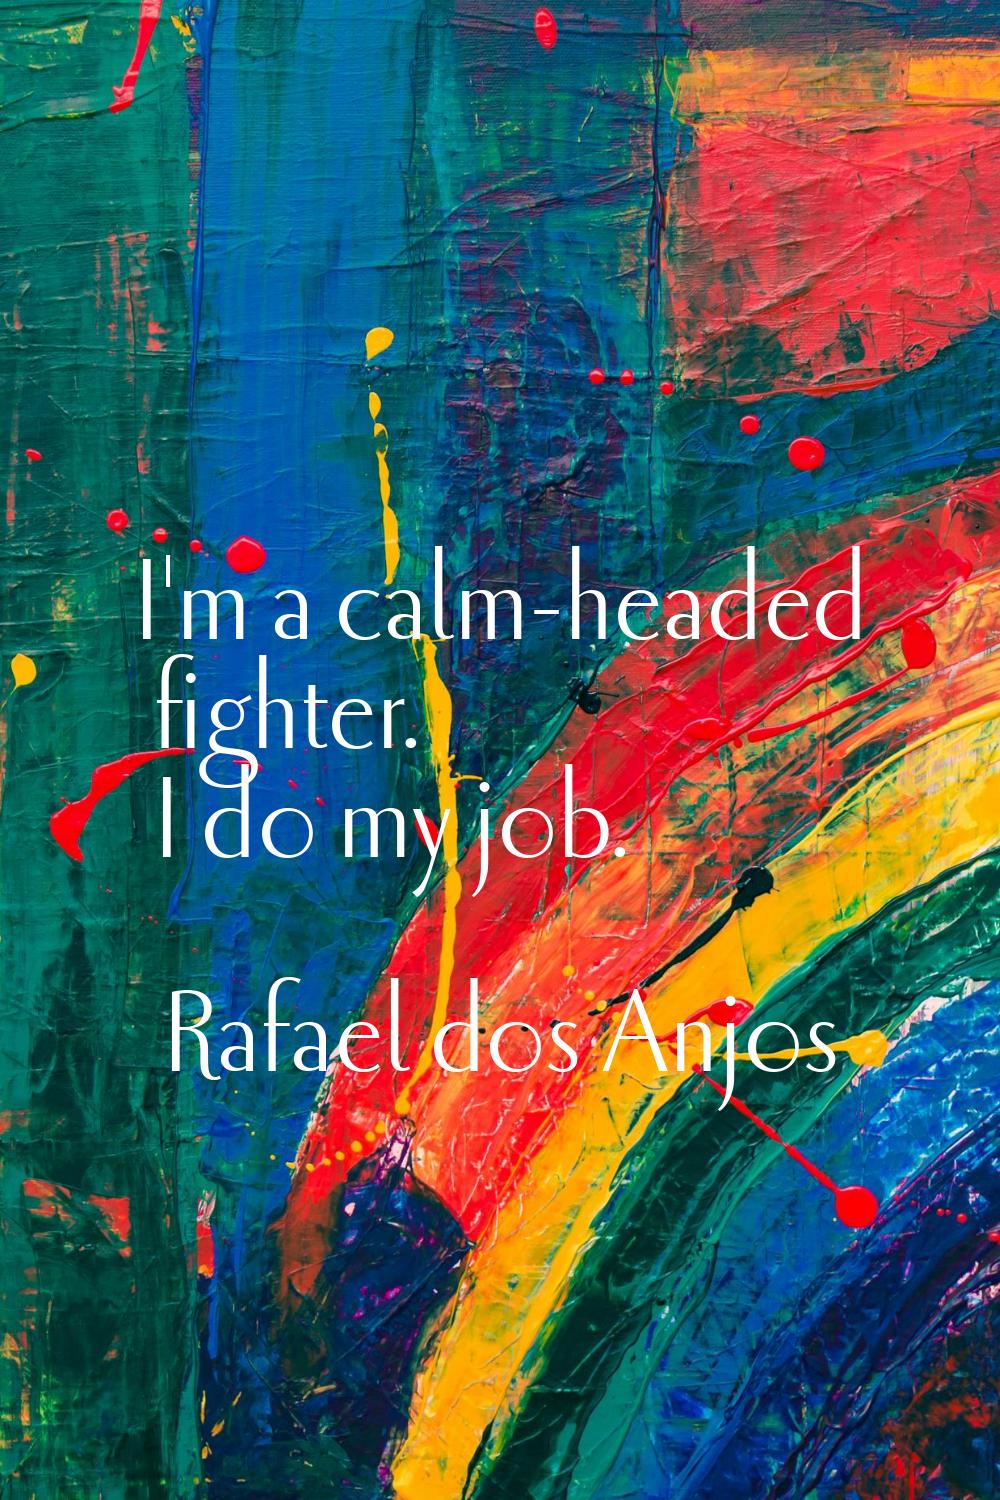 I'm a calm-headed fighter. I do my job.